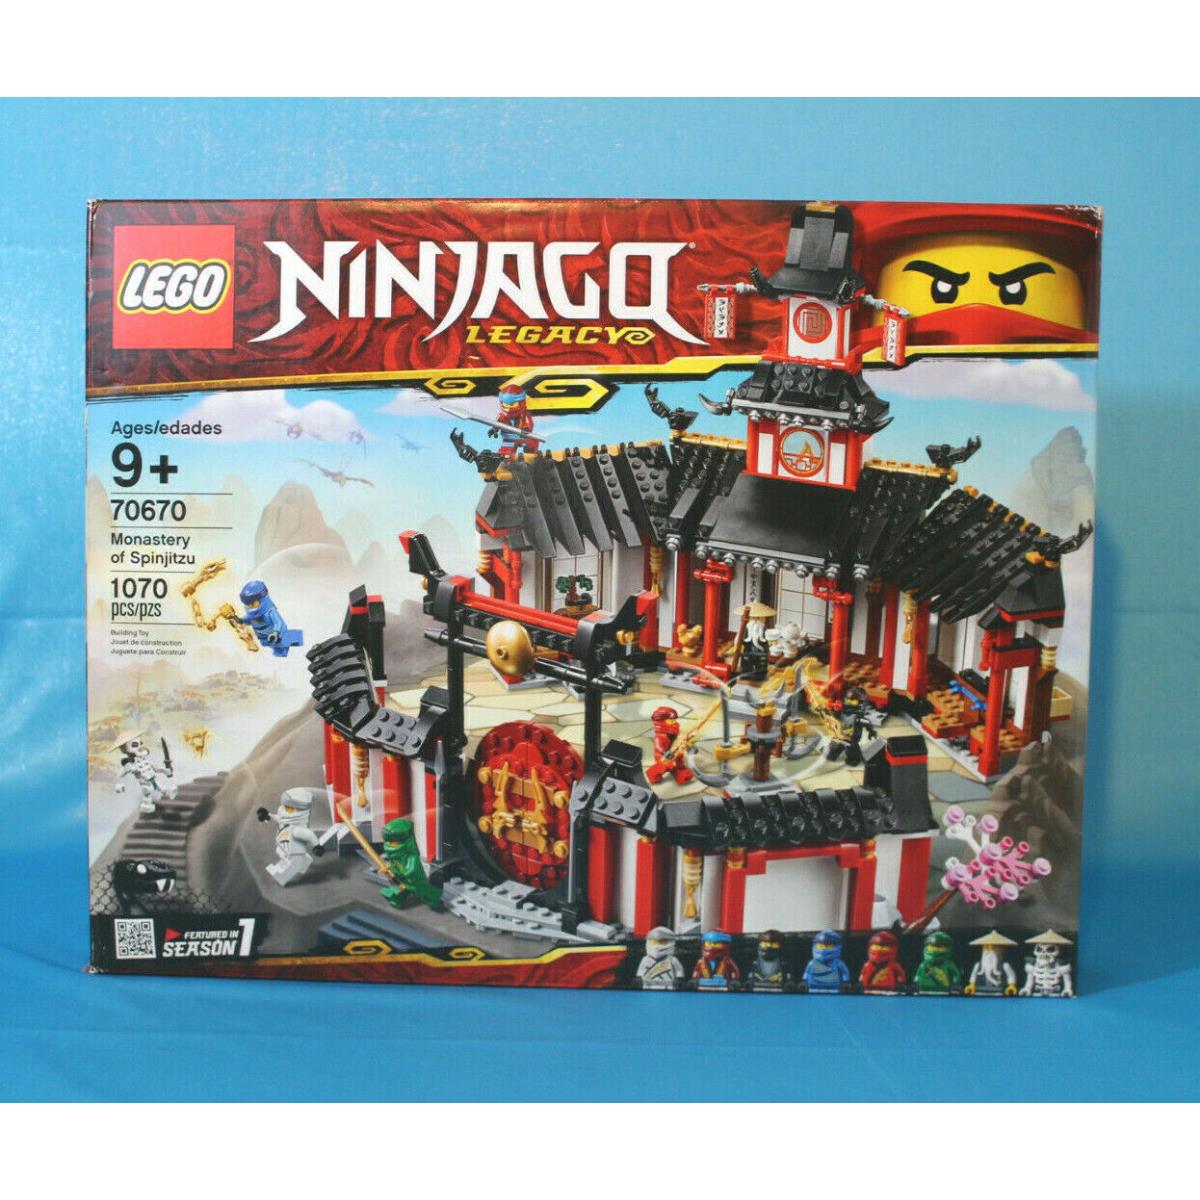 Lego Ninjago Legacy 70670 Monastery of Spinjitzu Retired 2018